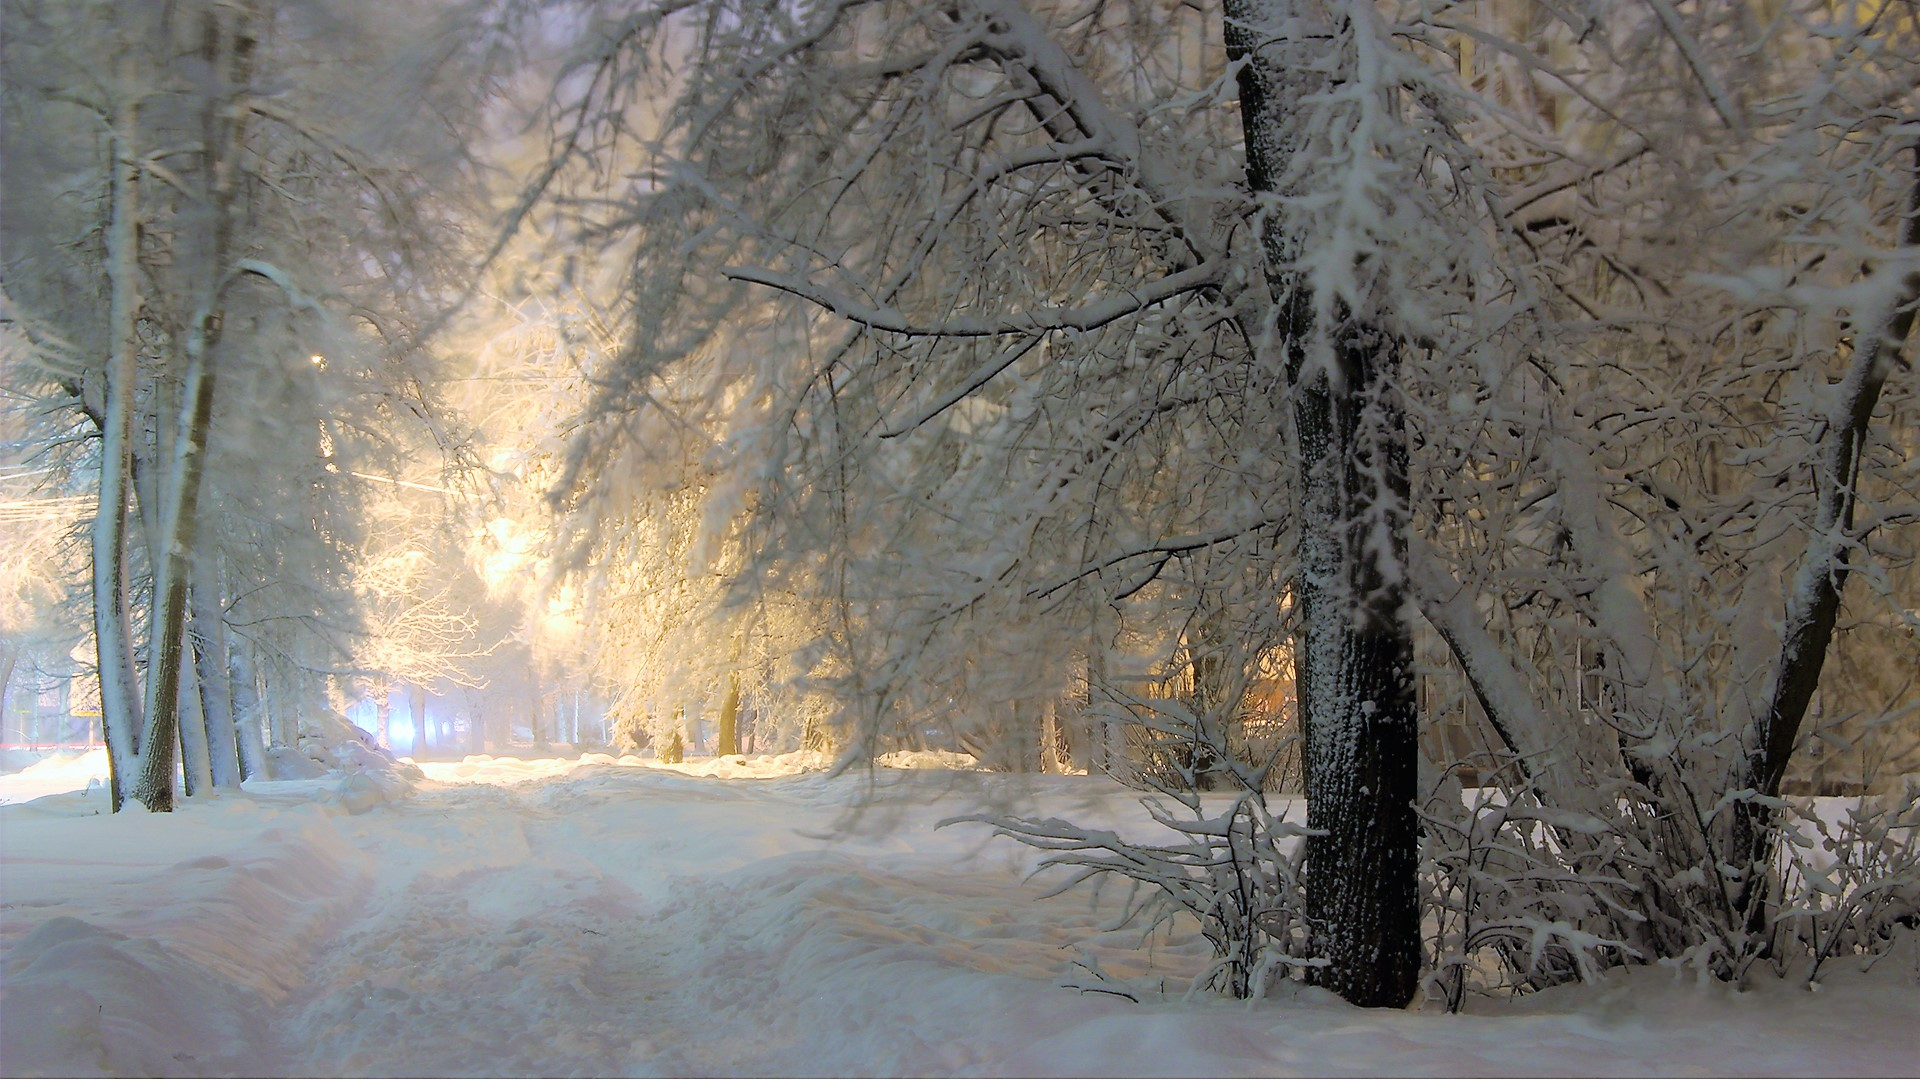 Скачать обои бесплатно Зима, Снег, Дорога, Дерево, Земля/природа картинка на рабочий стол ПК